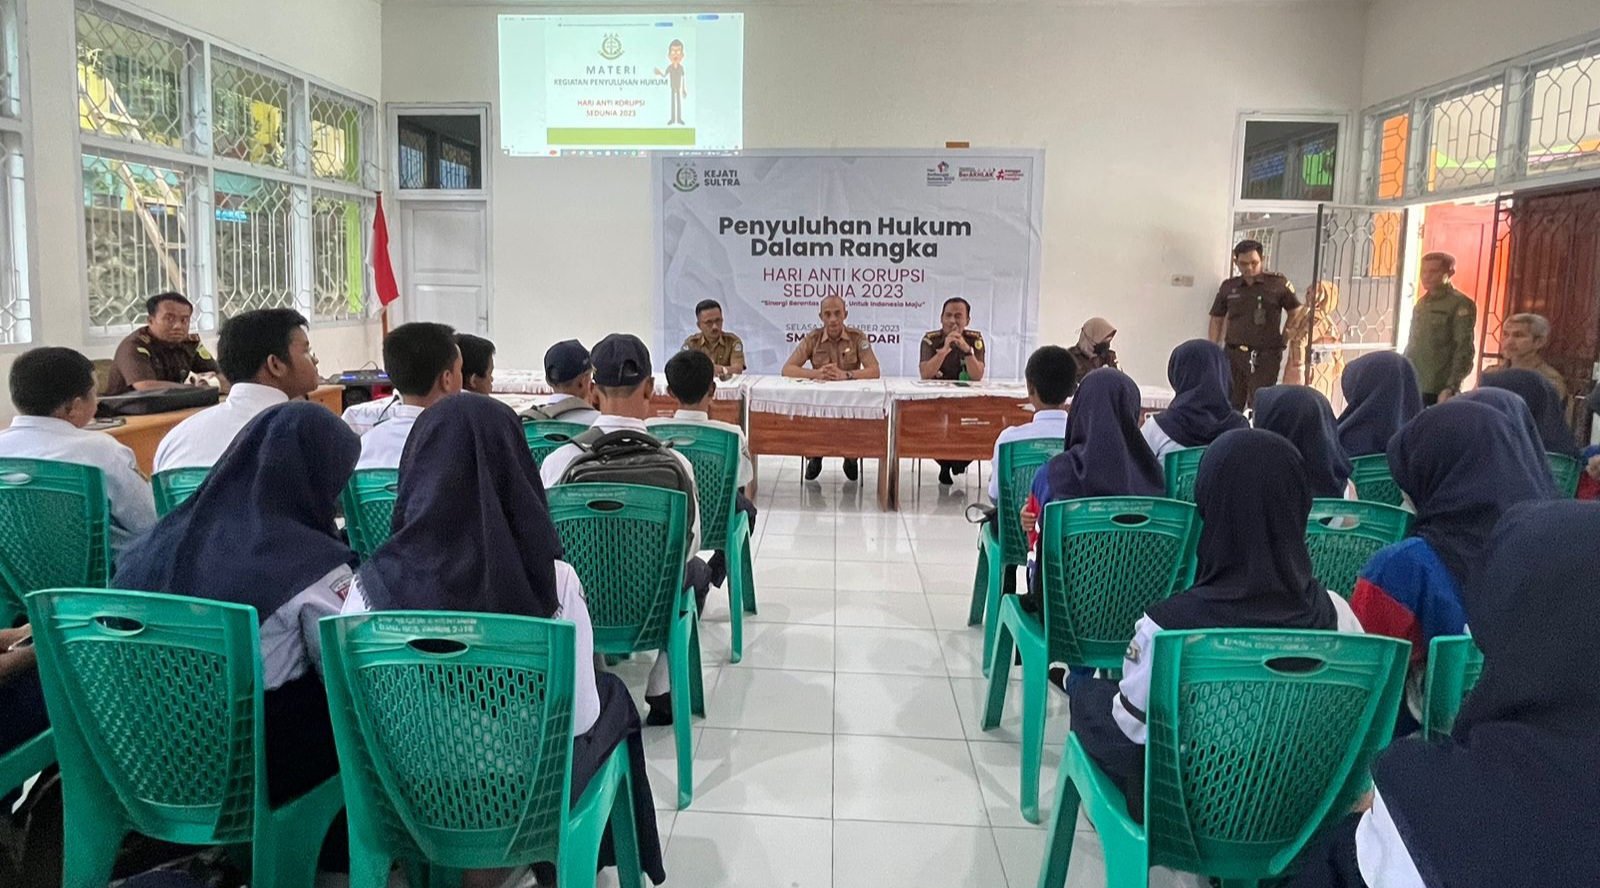 Peringati Hakordia 2023, Kejati Sulawesi Tenggara Gelar Penyuluhan Hukum di SMPN 4 Kendari